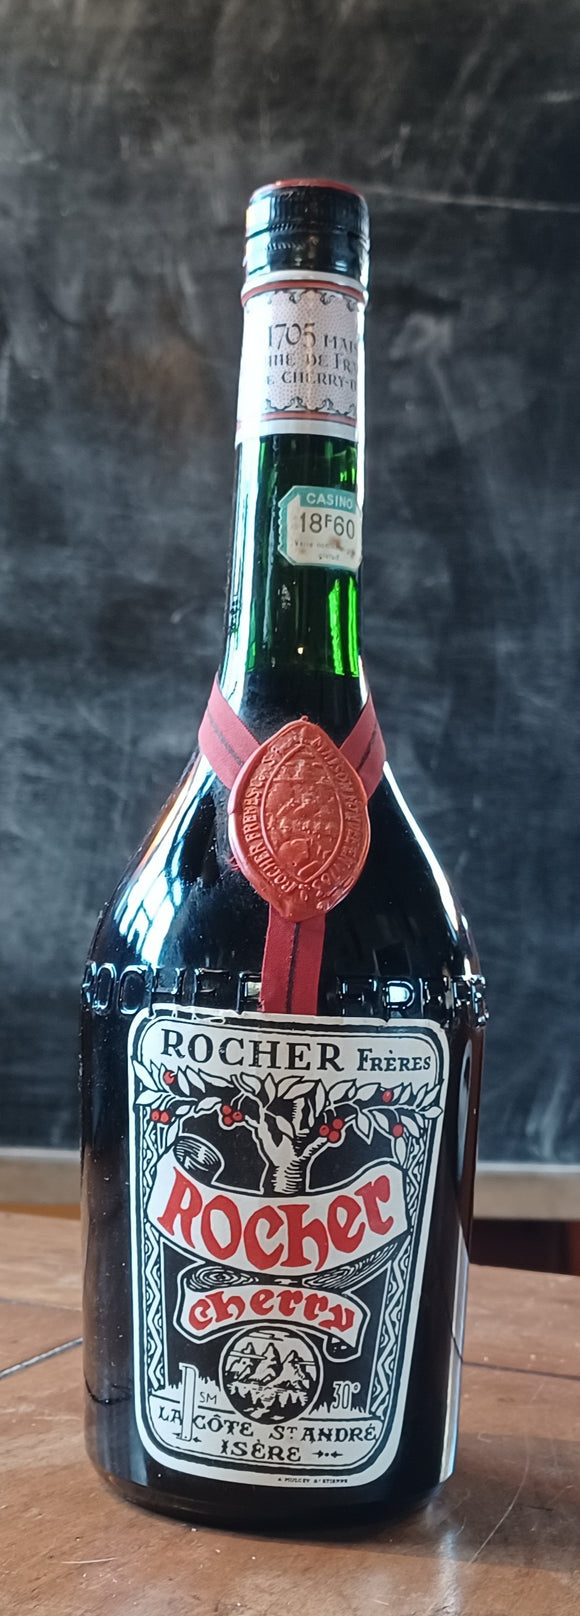 Rocher Cherry Brandy 1960-1970